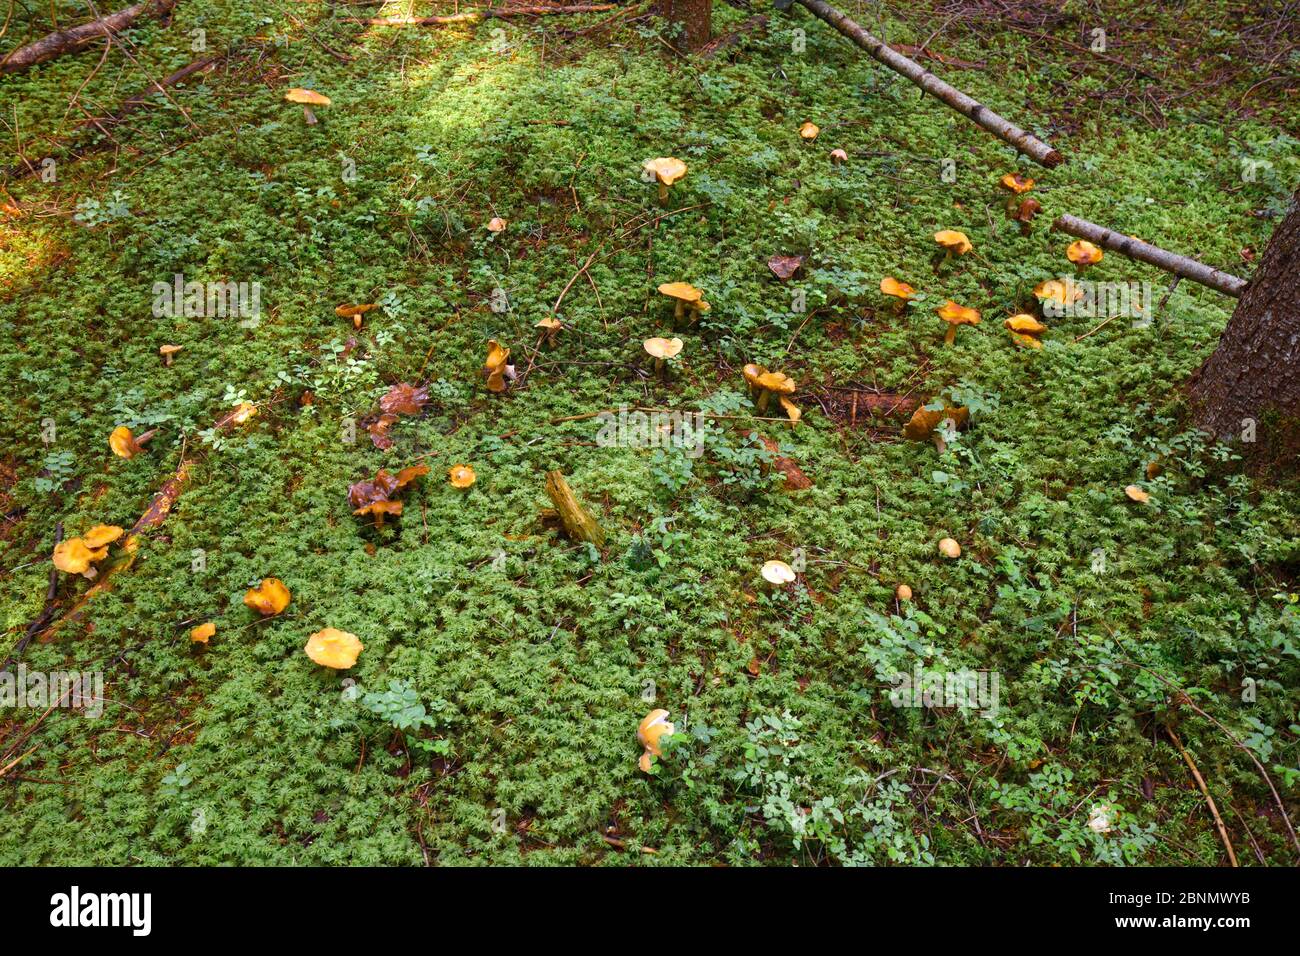 Vari funghi non commestibili crescono su un pavimento umido della foresta coperto di muschio Foto Stock